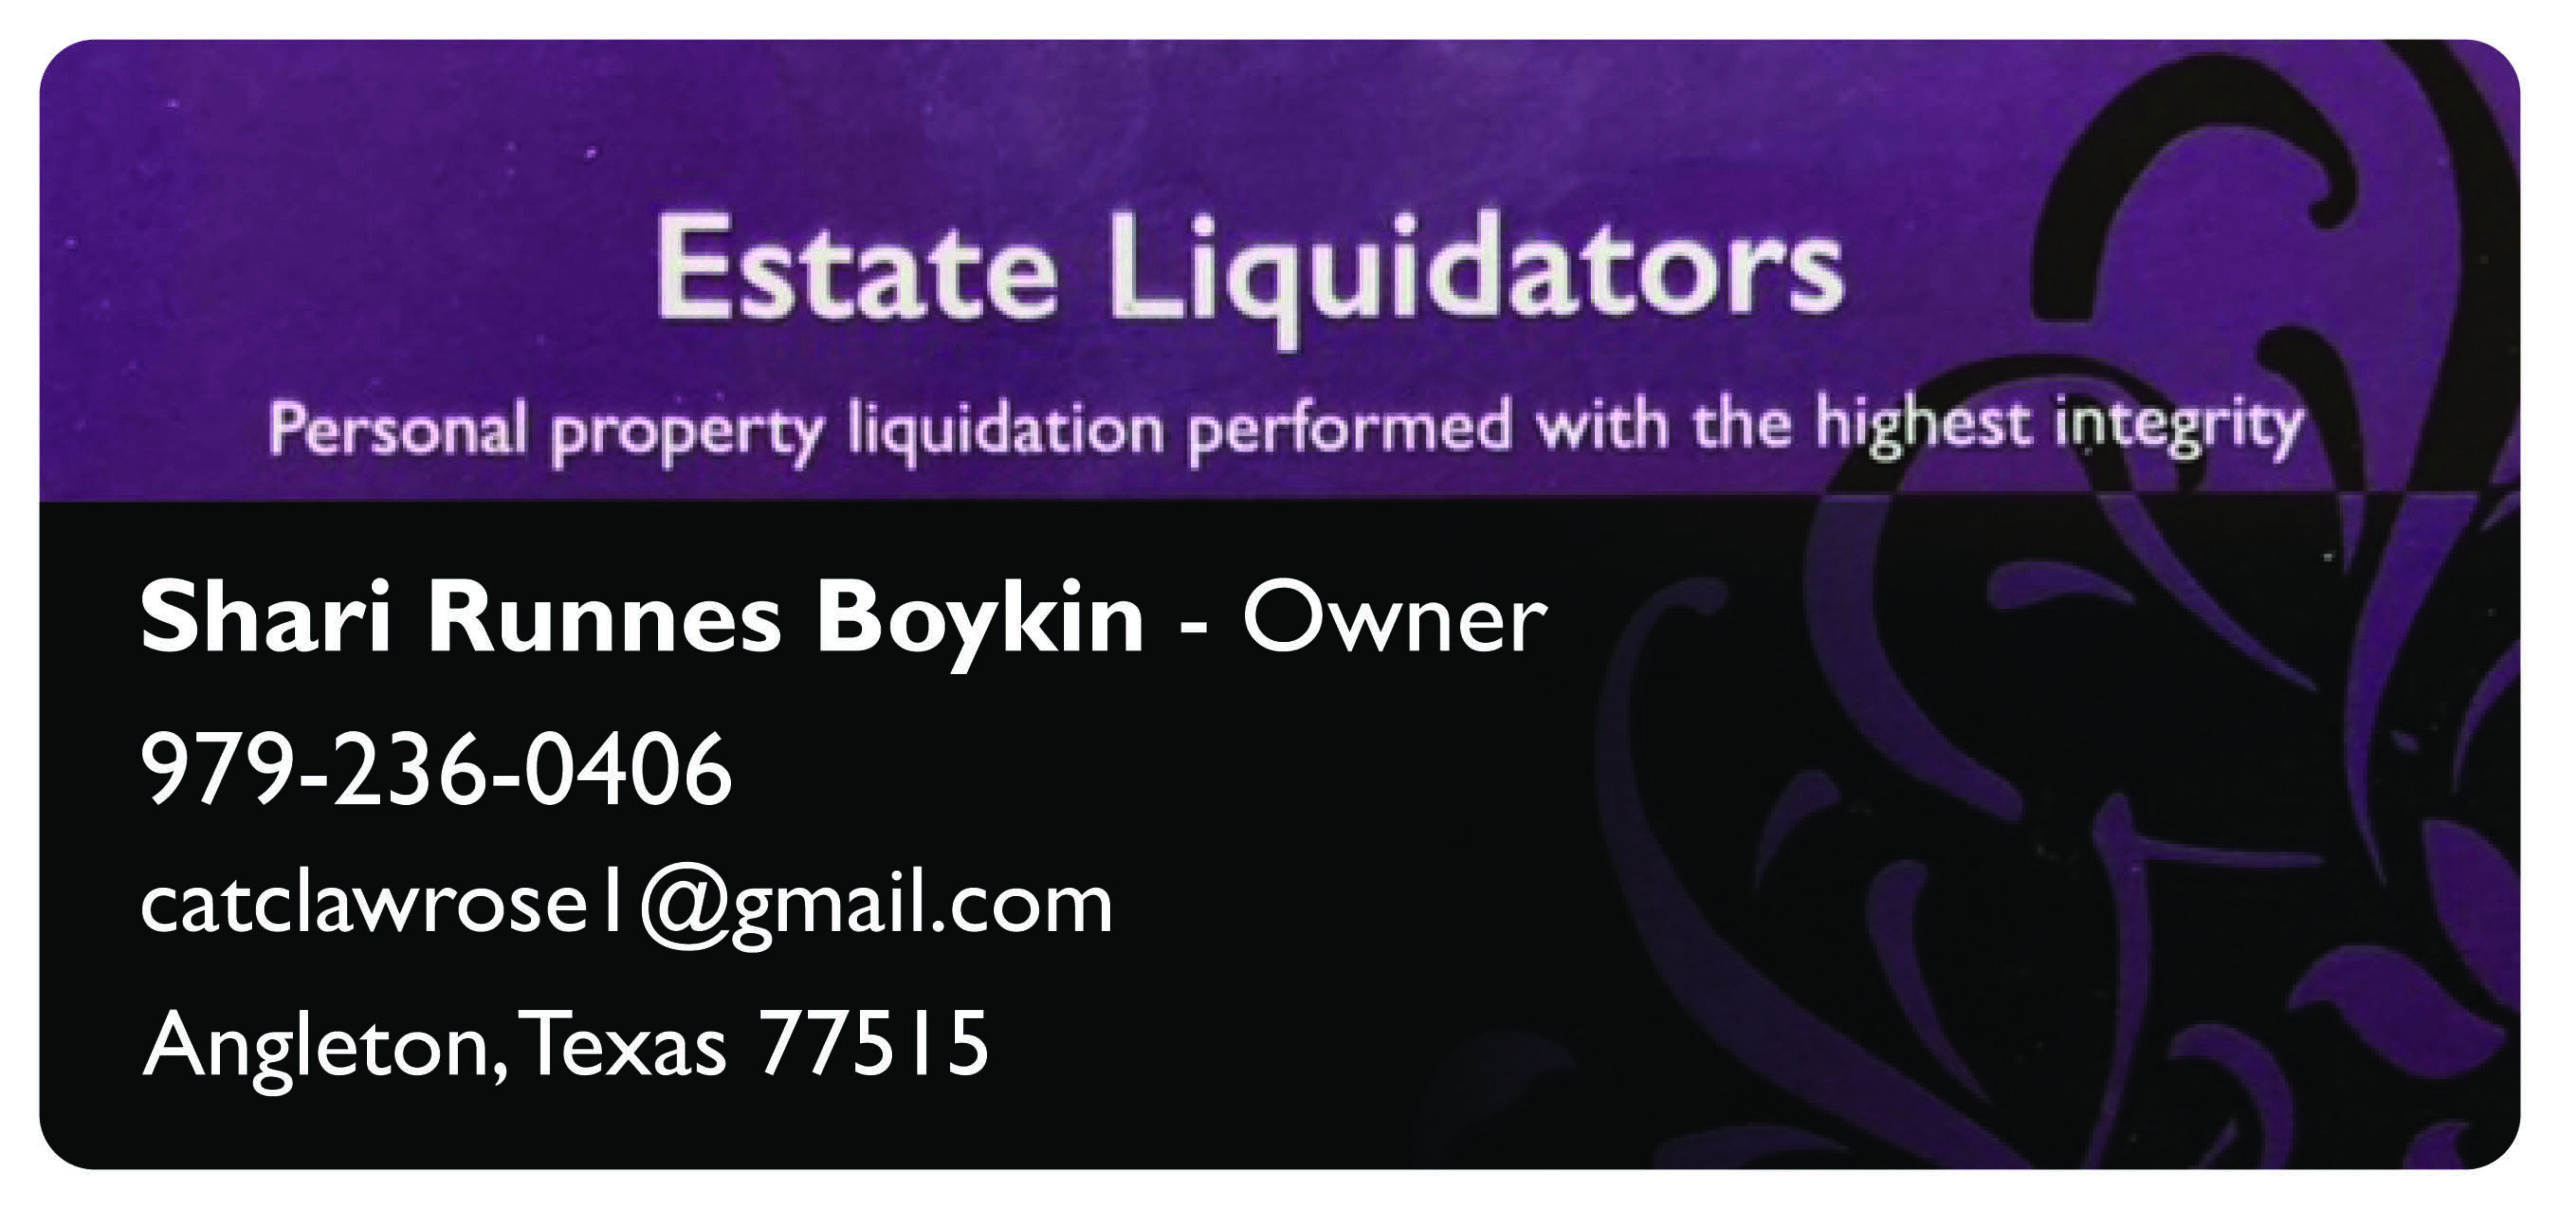 Estate Liquidators